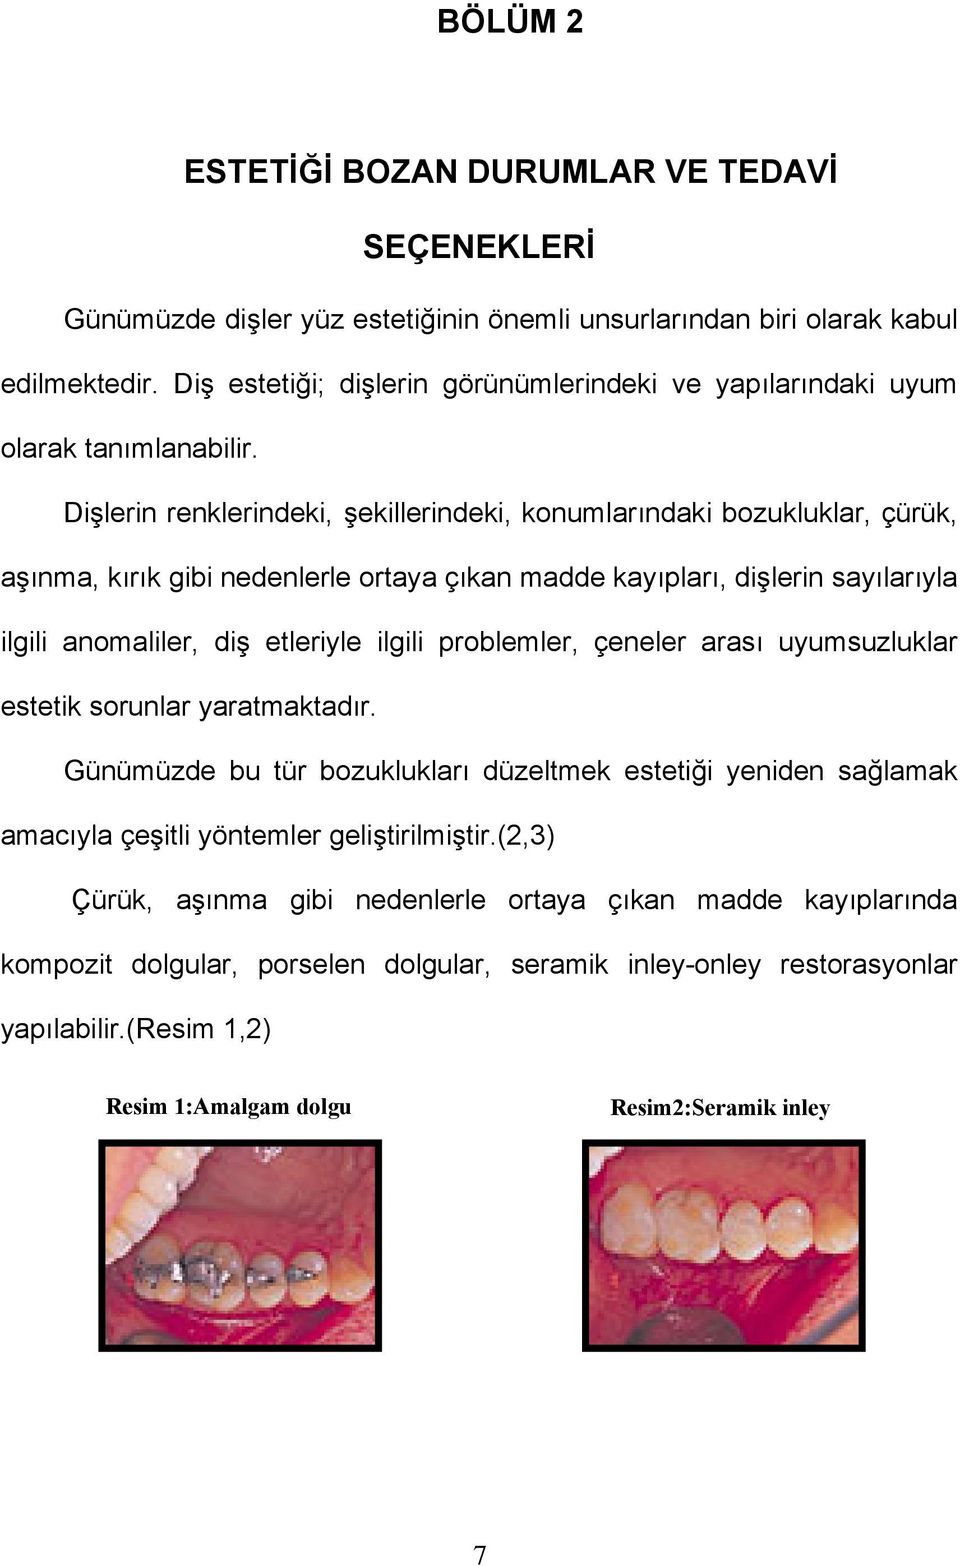 Dişlerin renklerindeki, şekillerindeki, konumlarındaki bozukluklar, çürük, aşınma, kırık gibi nedenlerle ortaya çıkan madde kayıpları, dişlerin sayılarıyla ilgili anomaliler, diş etleriyle ilgili